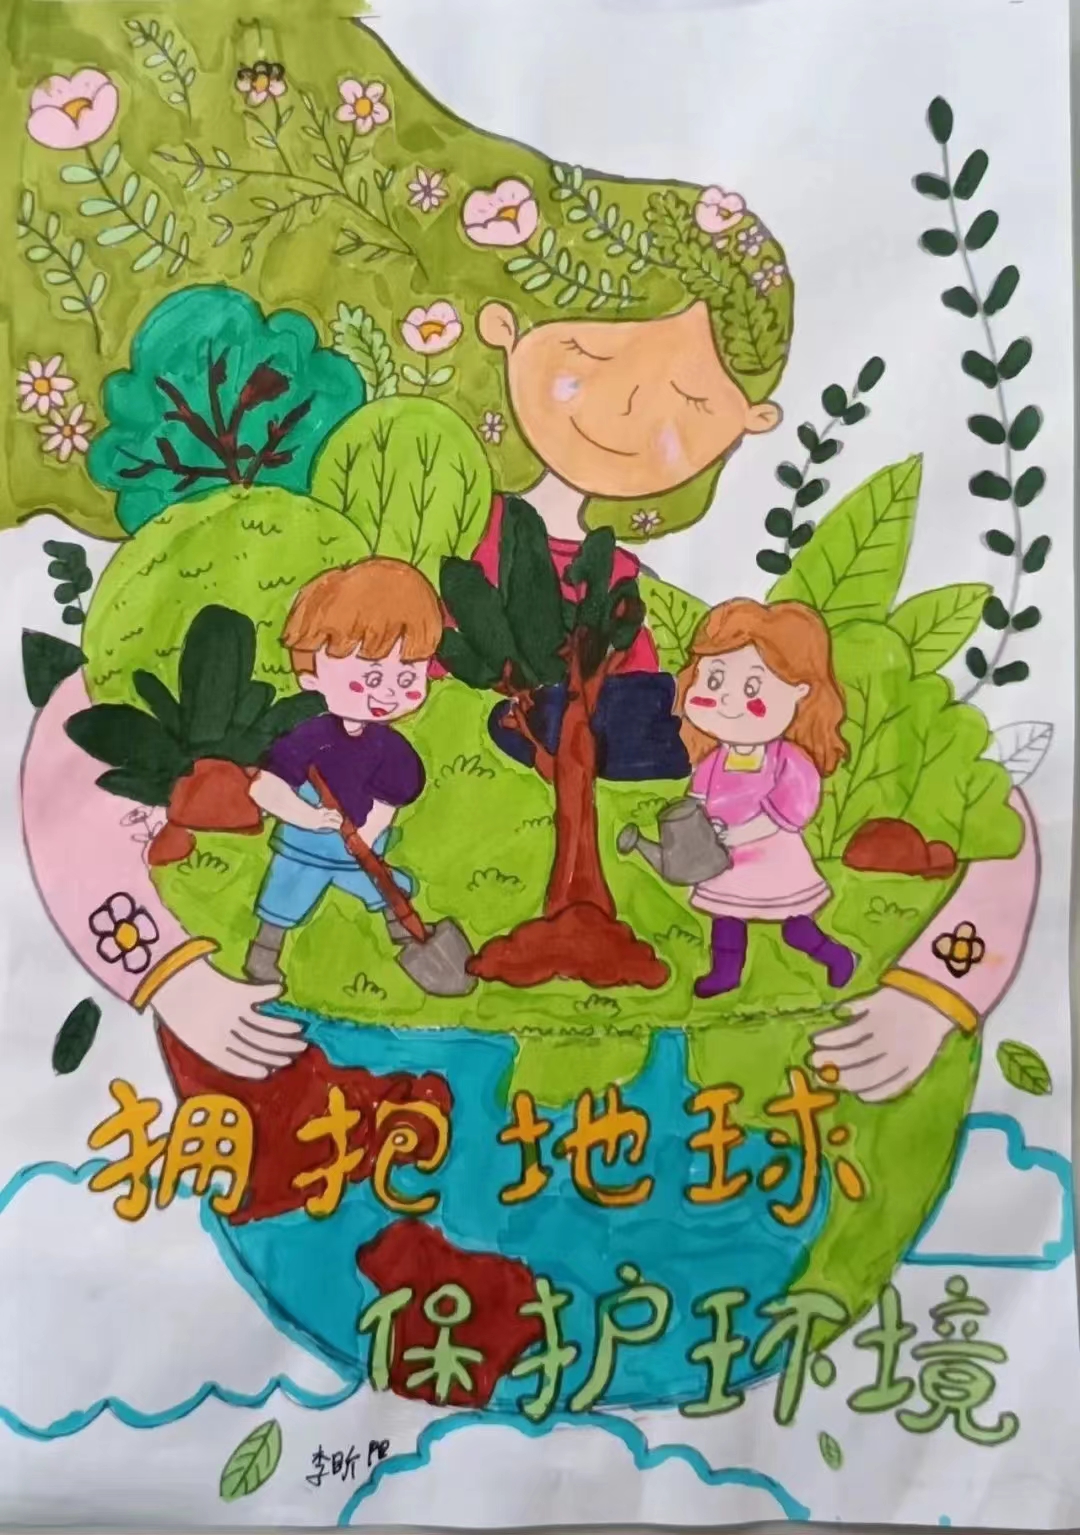 还通过让孩子们在课堂上亲手制作动植物剪贴画,讨论中国生态环境现状